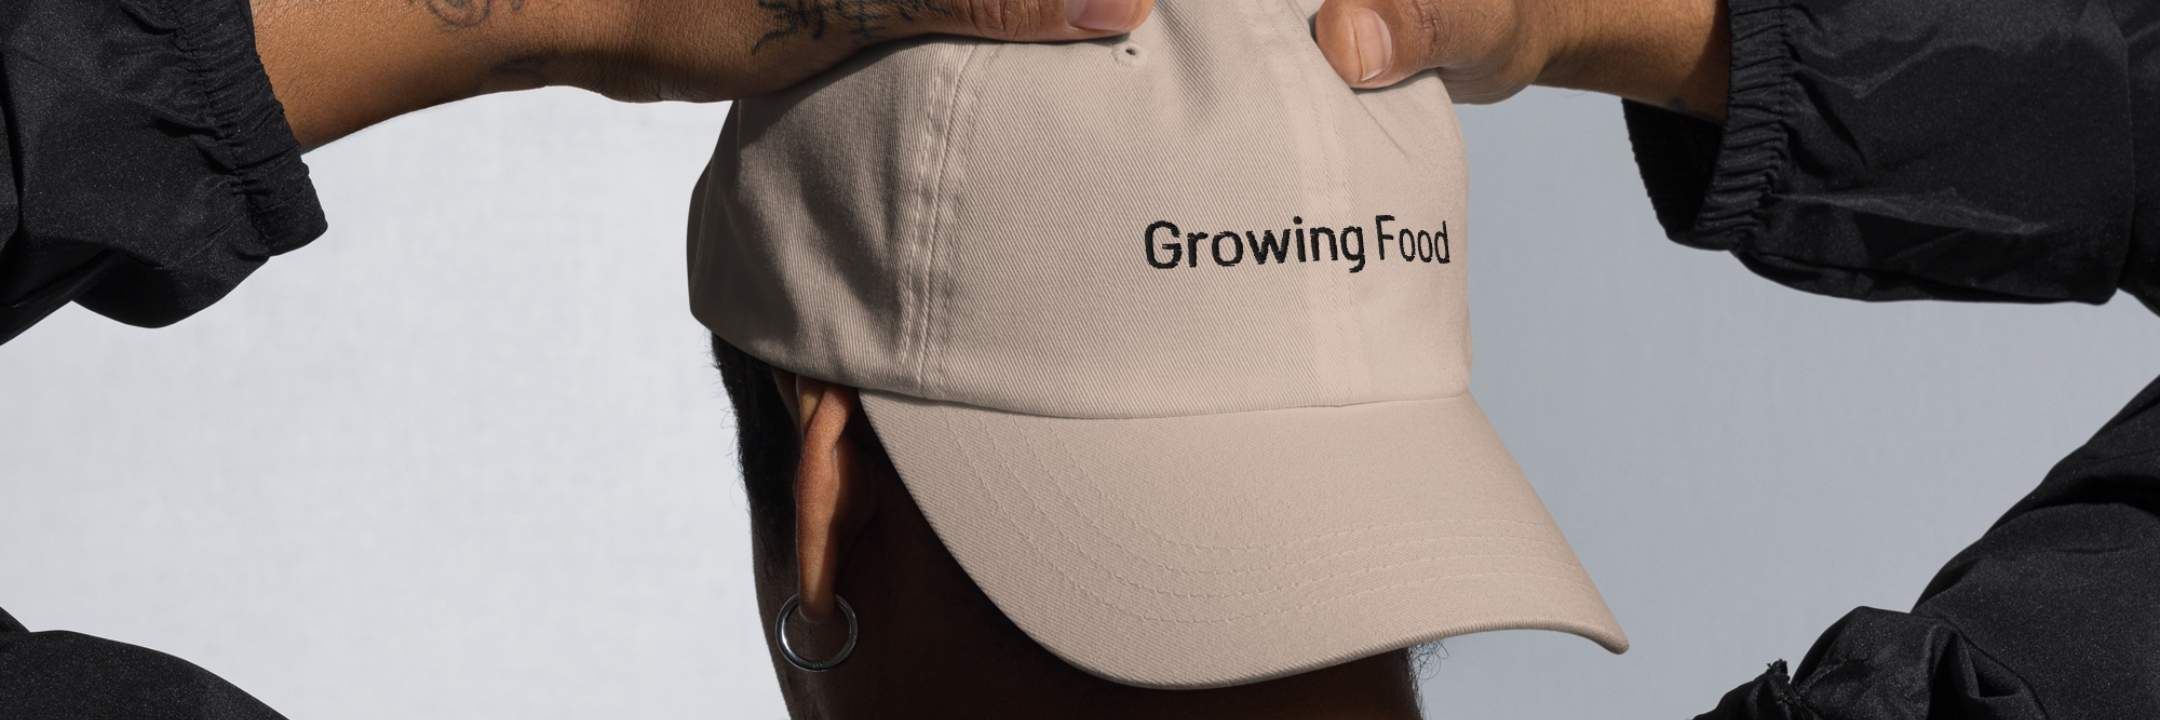 Kappe "Growing Food" Geschenkartikel